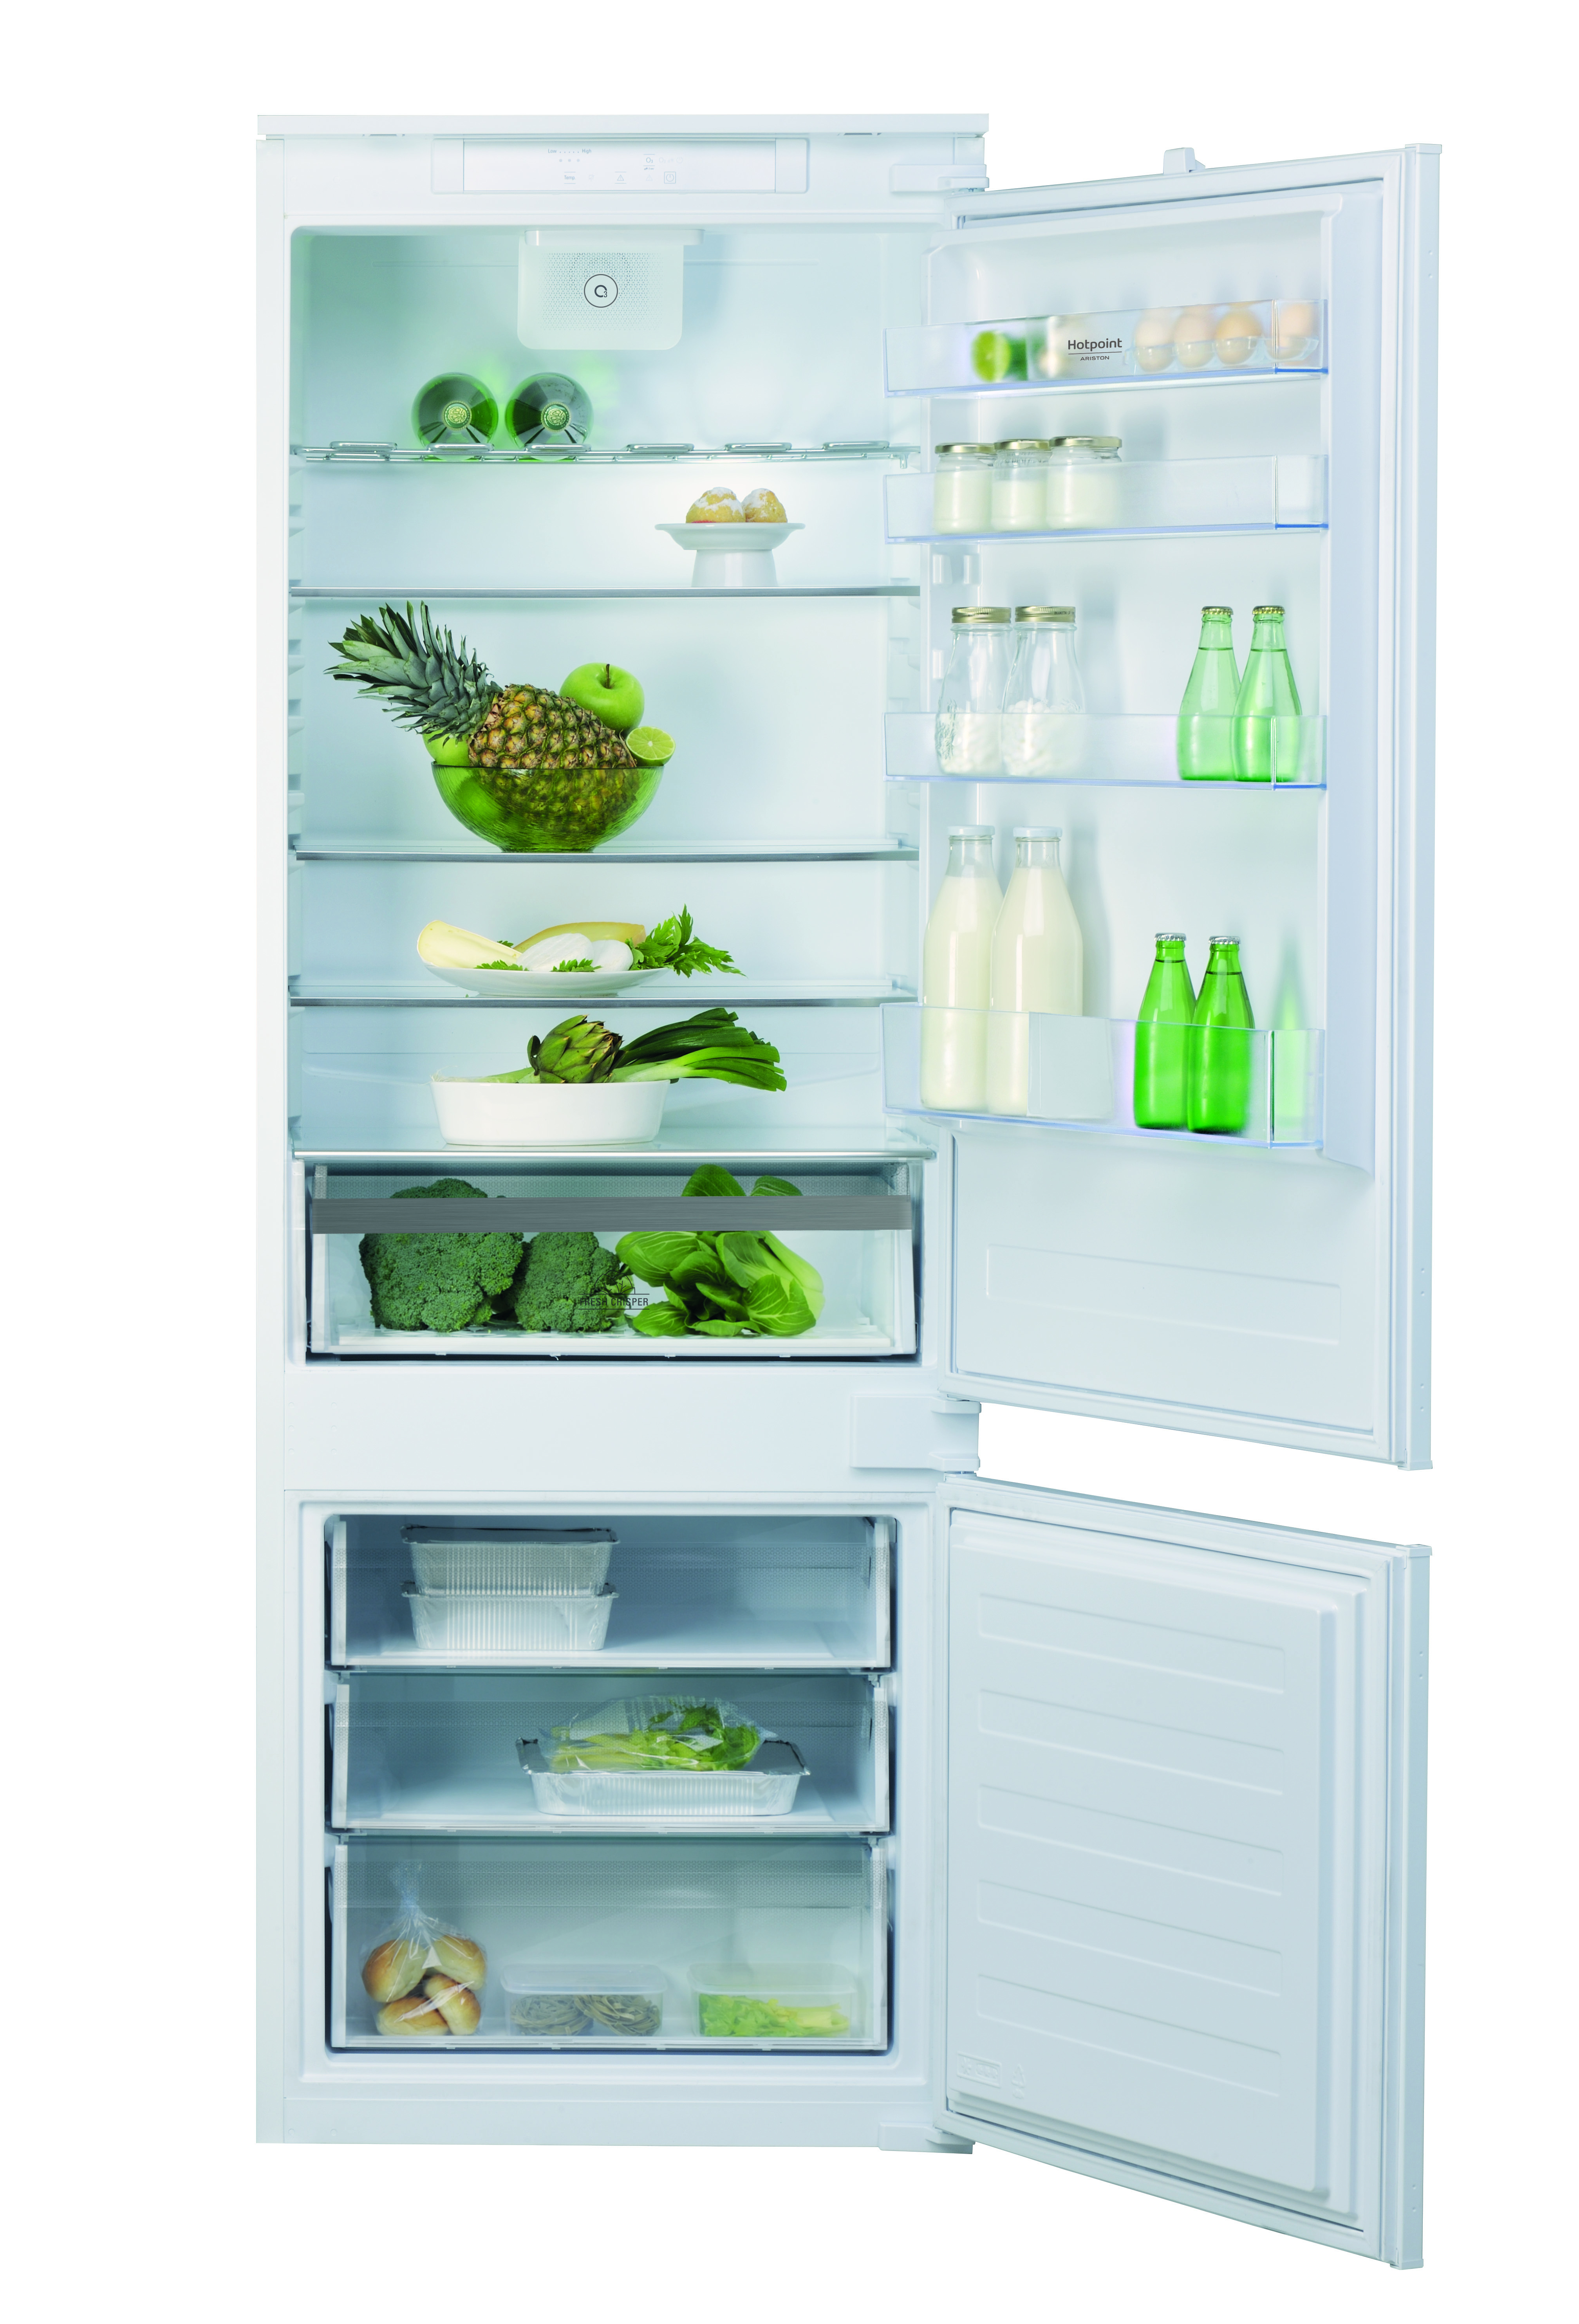 Limpatto ambientale dei frigoriferi: quali soluzioni eco-sostenibili?